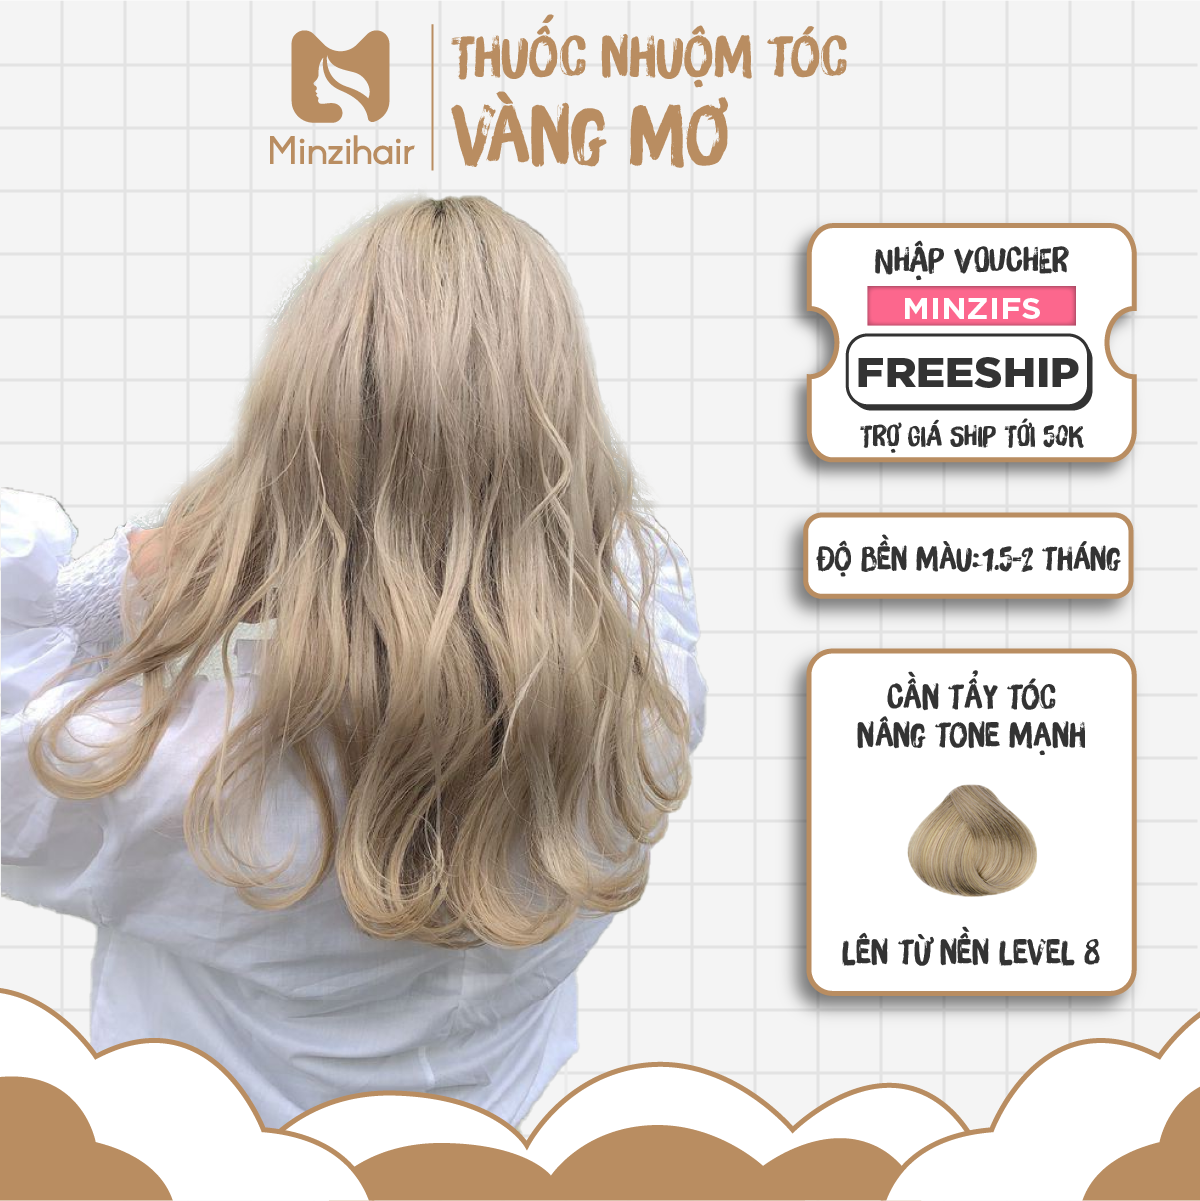 Với Tẩy tóc Level 8 giá rẻ, bạn sẽ sở hữu ngay tóc vàng mơ tự tin và nổi bật. Hãy xem hình ảnh để khám phá thêm về sản phẩm này.